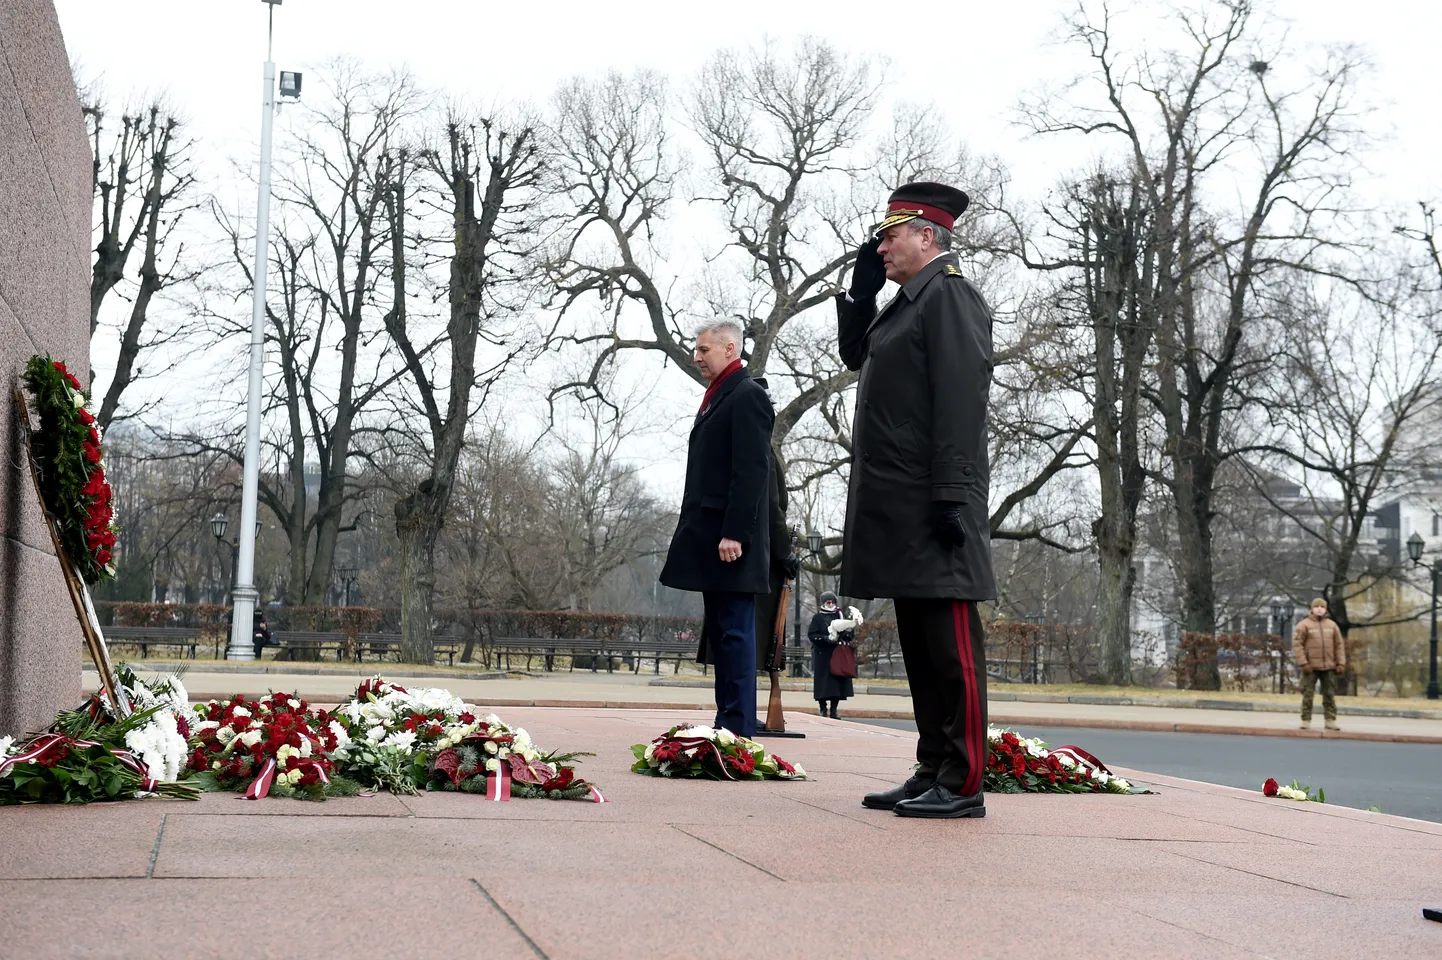 Aizsardzības ministrs Artis Pabriks (no kreisās) un Nacionālo bruņoto spēku komandieris ģenerālleitnants Leonīds Kalniņš noliek ziedus Komunistiskā genocīda upuru piemiņas dienā pie Brīvības pieminekļa.